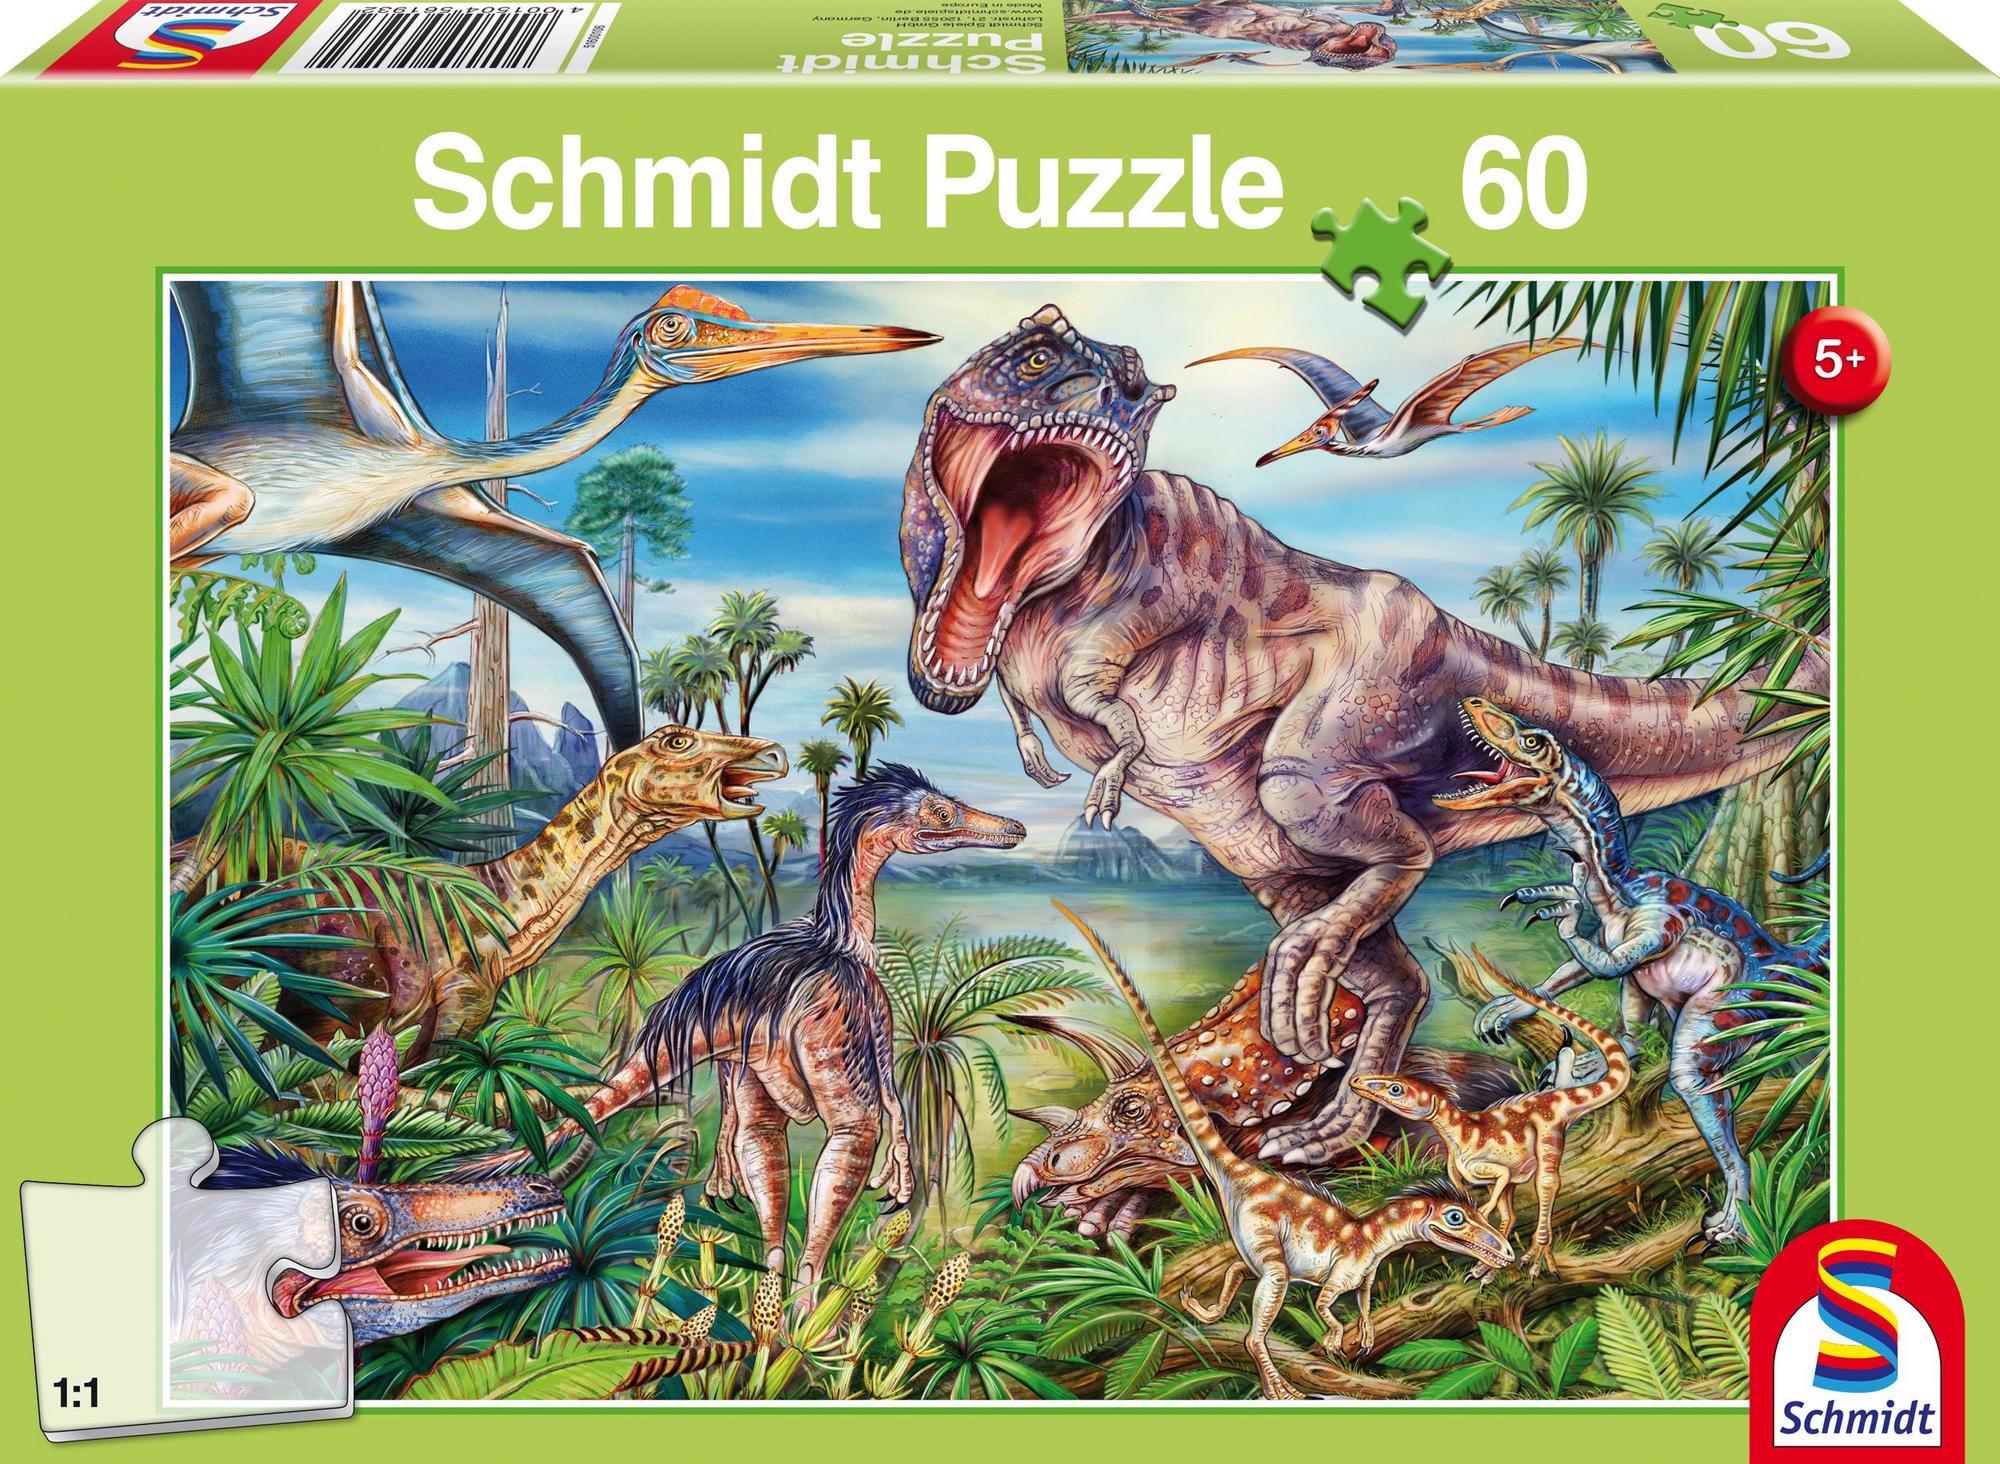 Puzzle A dinoszauruszok között